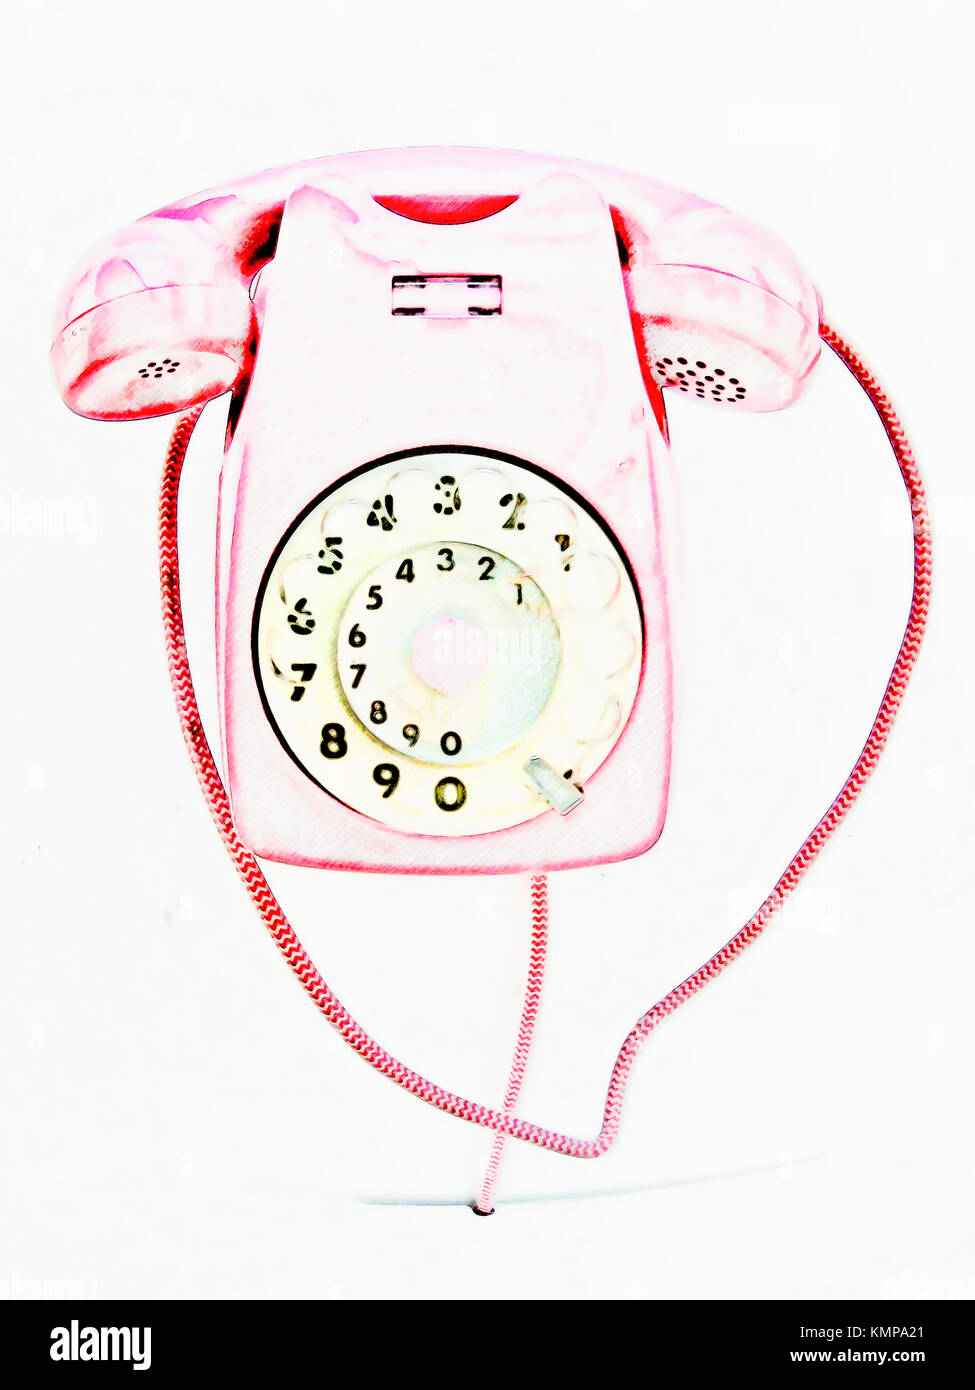 Dessin d'un téléphone vintage rose. Banque D'Images